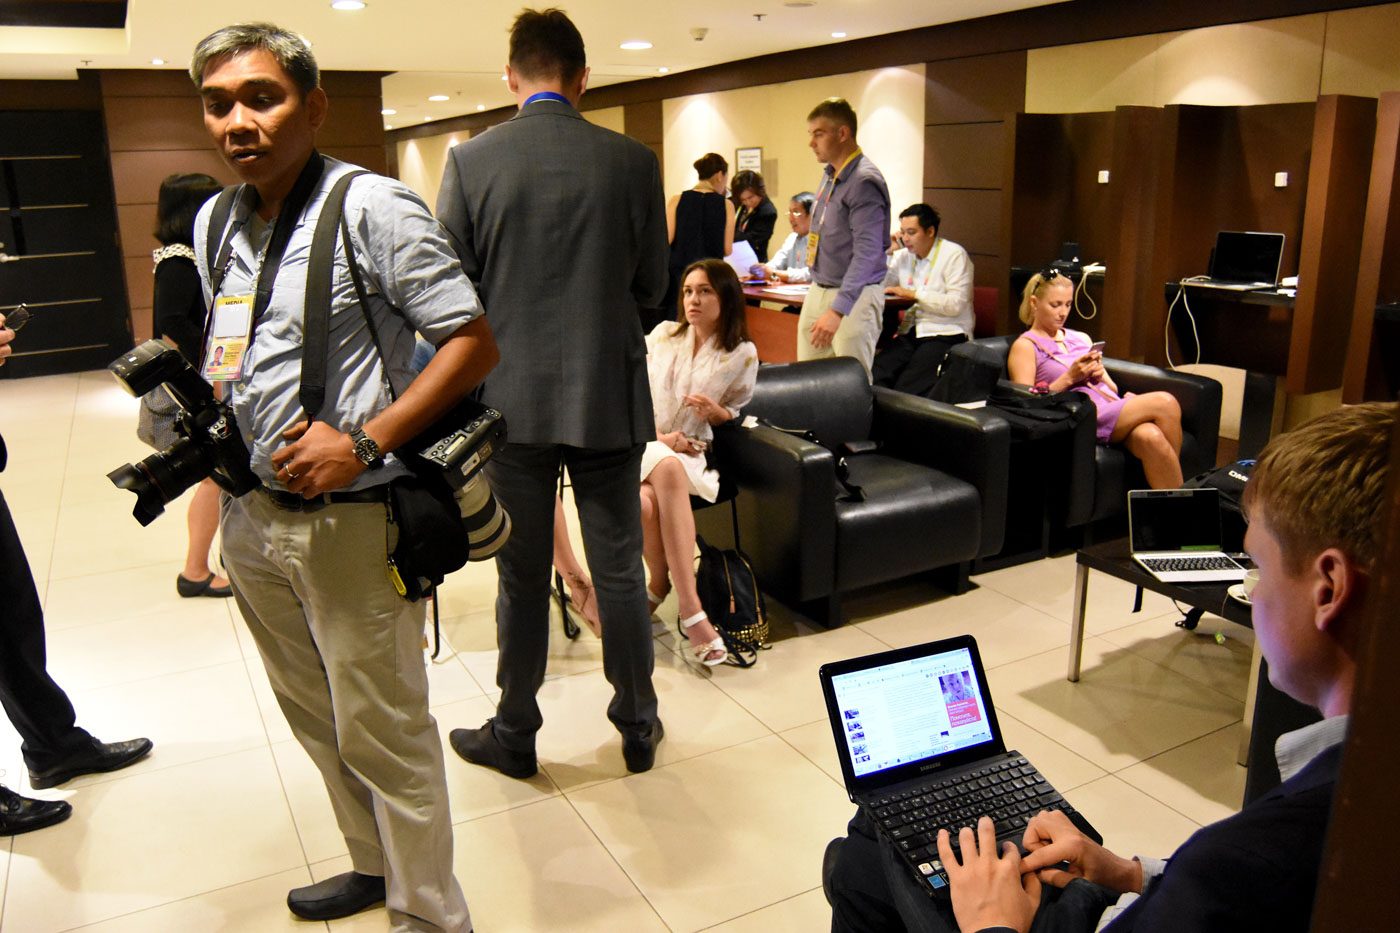 IN PHOTOS: Behind the scenes of ASEAN meetings